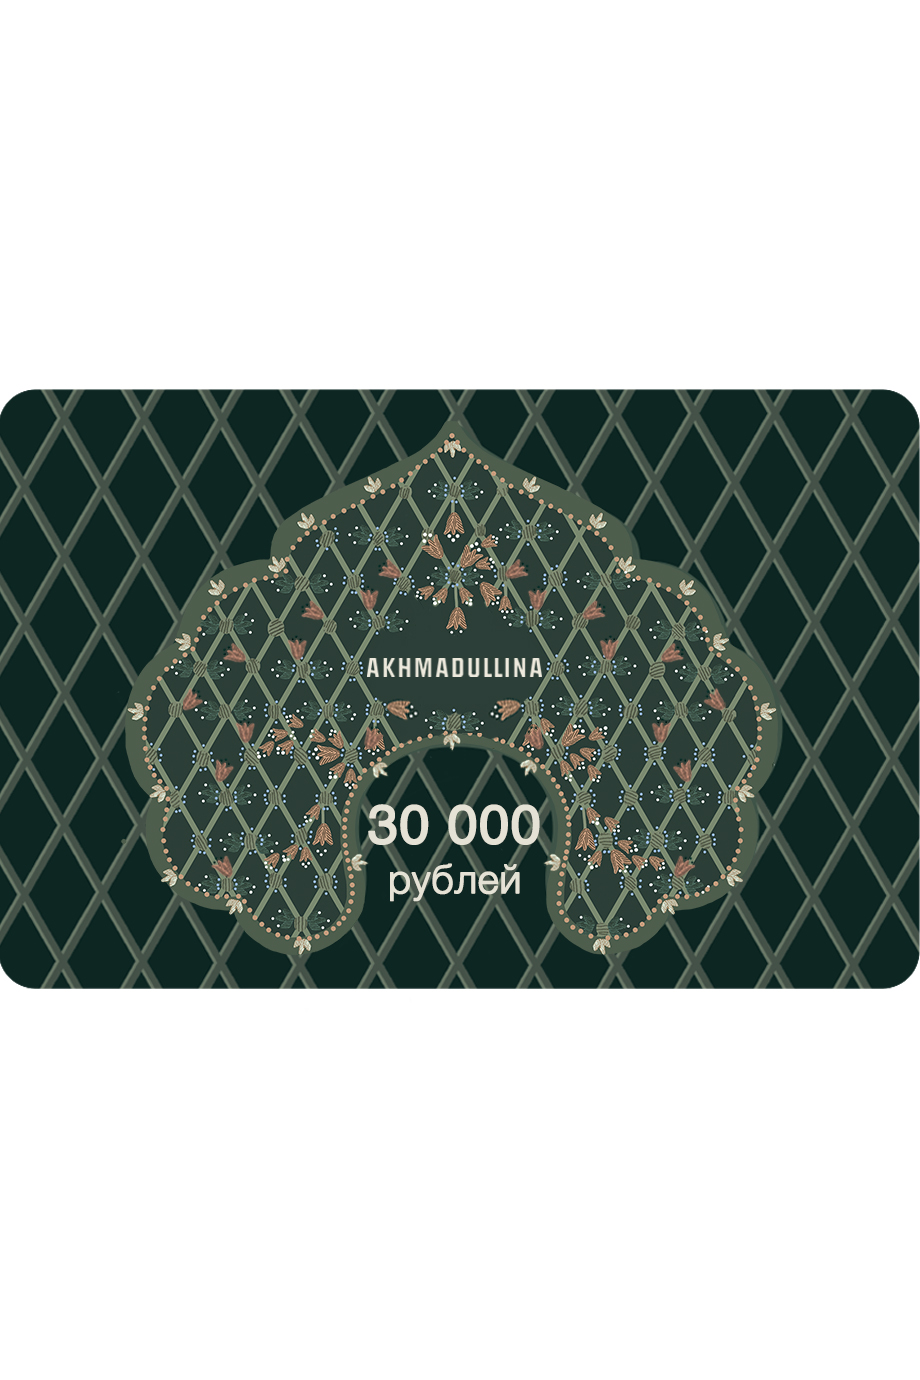 Подарочный сертификат 30 000 руб.